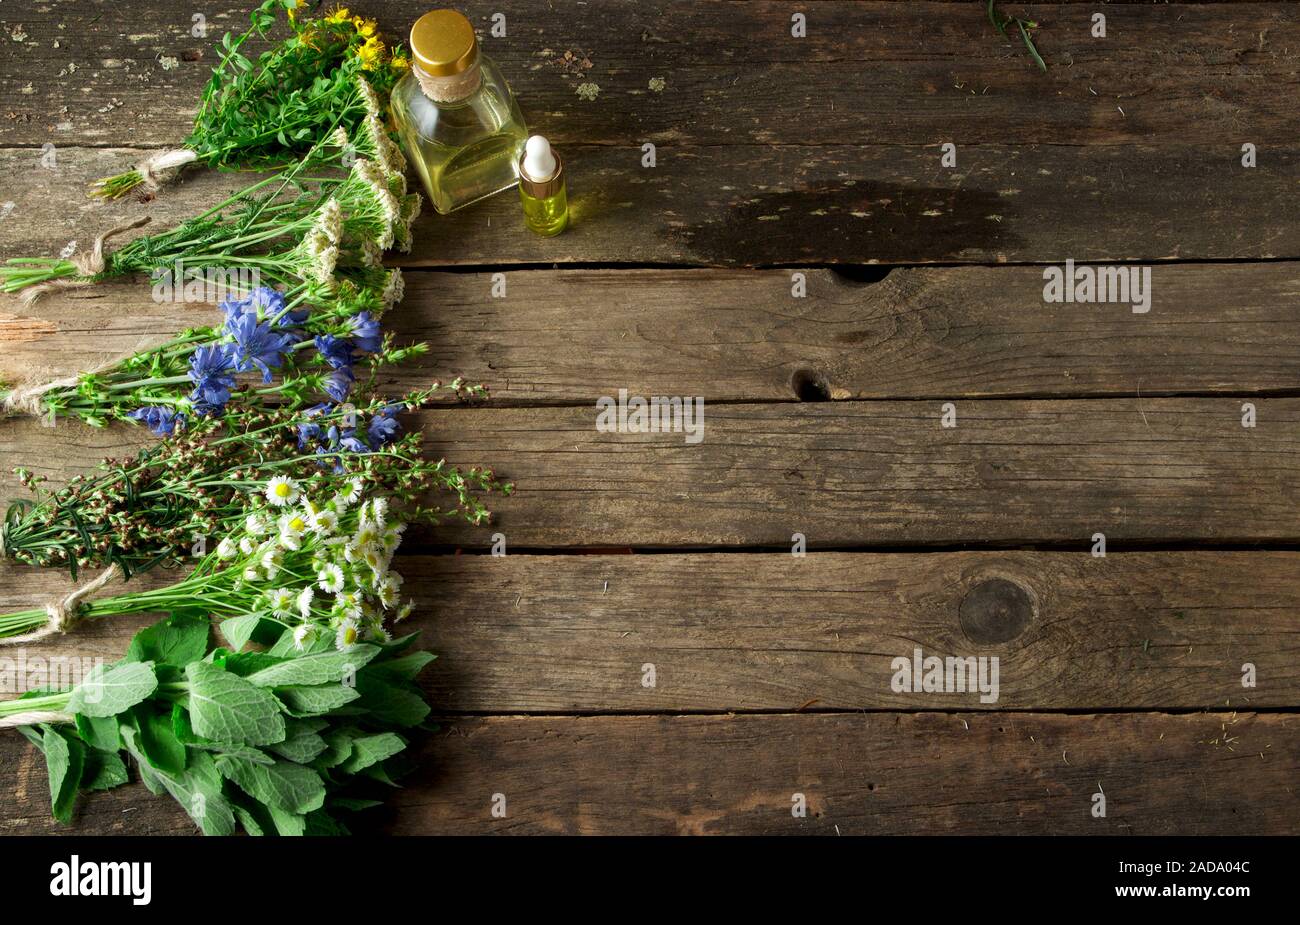 Des herbes médicinales. Les herbes médicinales (camomille, achillée, absinthe, menthe, millepertuis et de chicorée) sur une vieille planche de bois. Banque D'Images